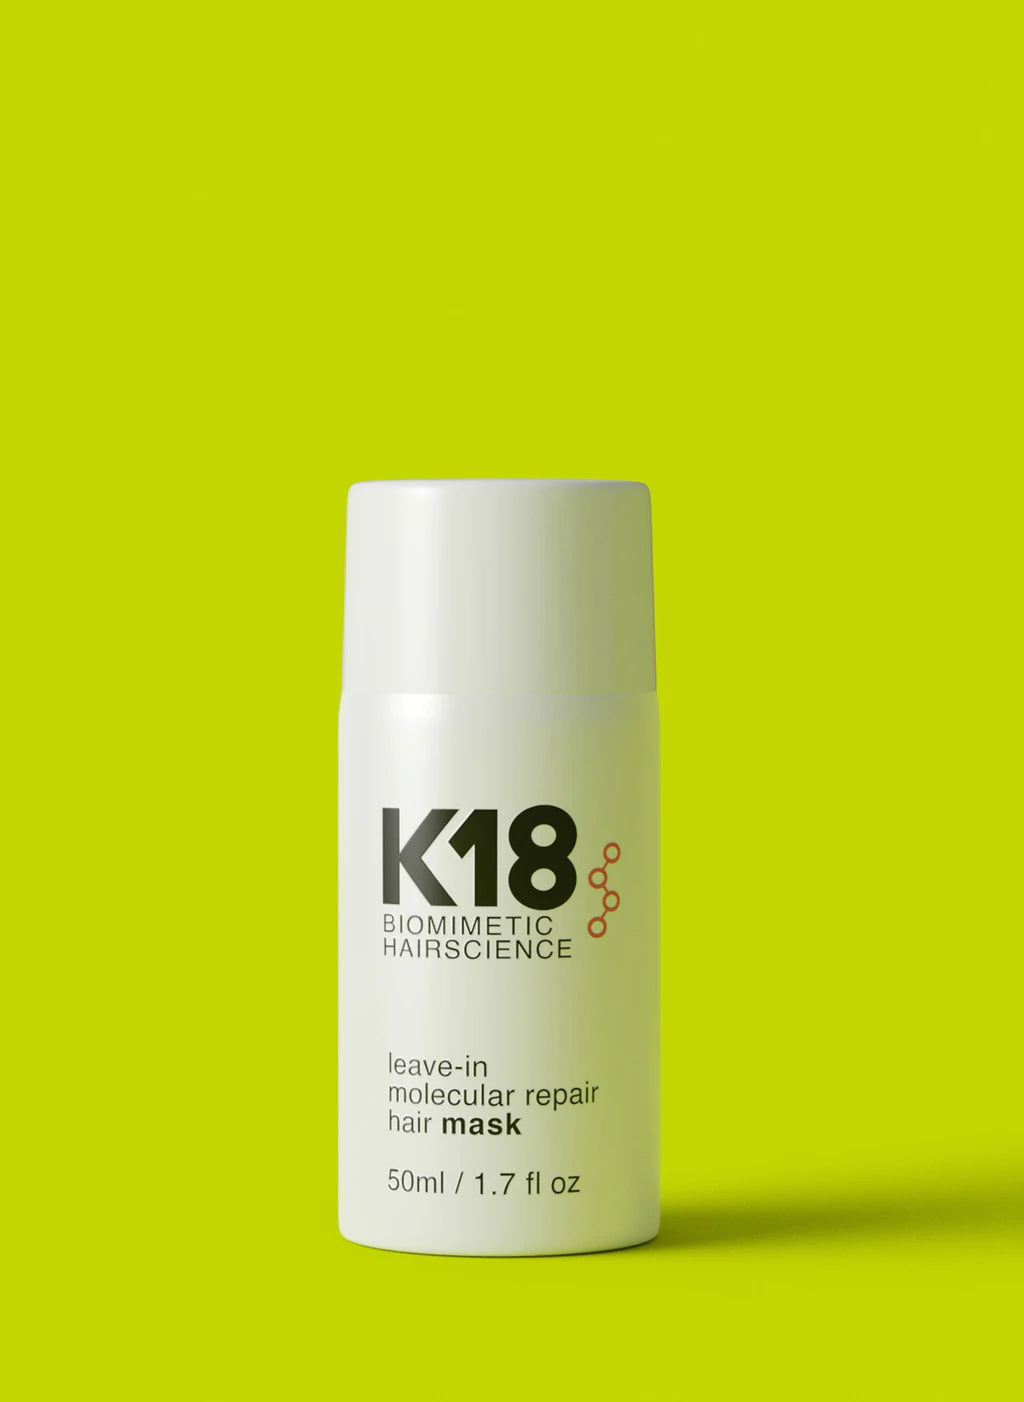 K18 Biomimetic Molecular Repair Mask 50ml